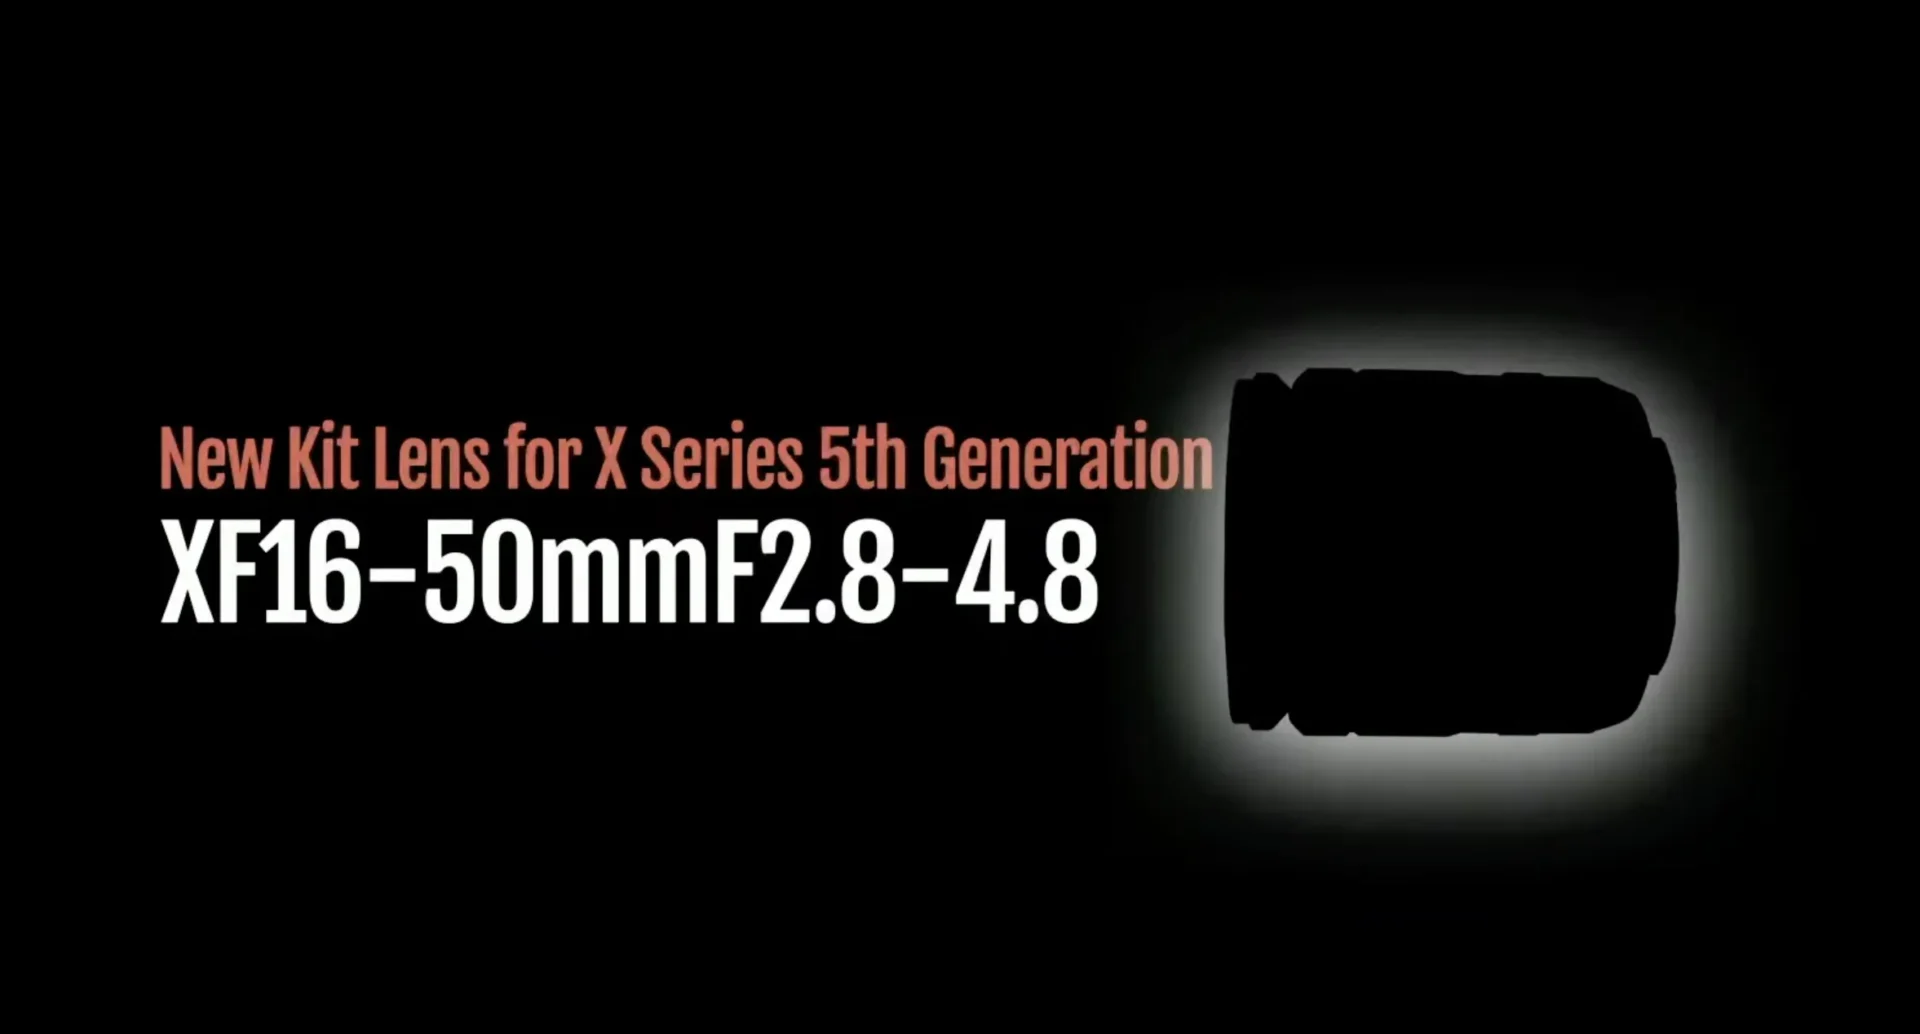 Fujifilm hé lộ ống kính kit XF 16-50mm F2.8-4.8 mới